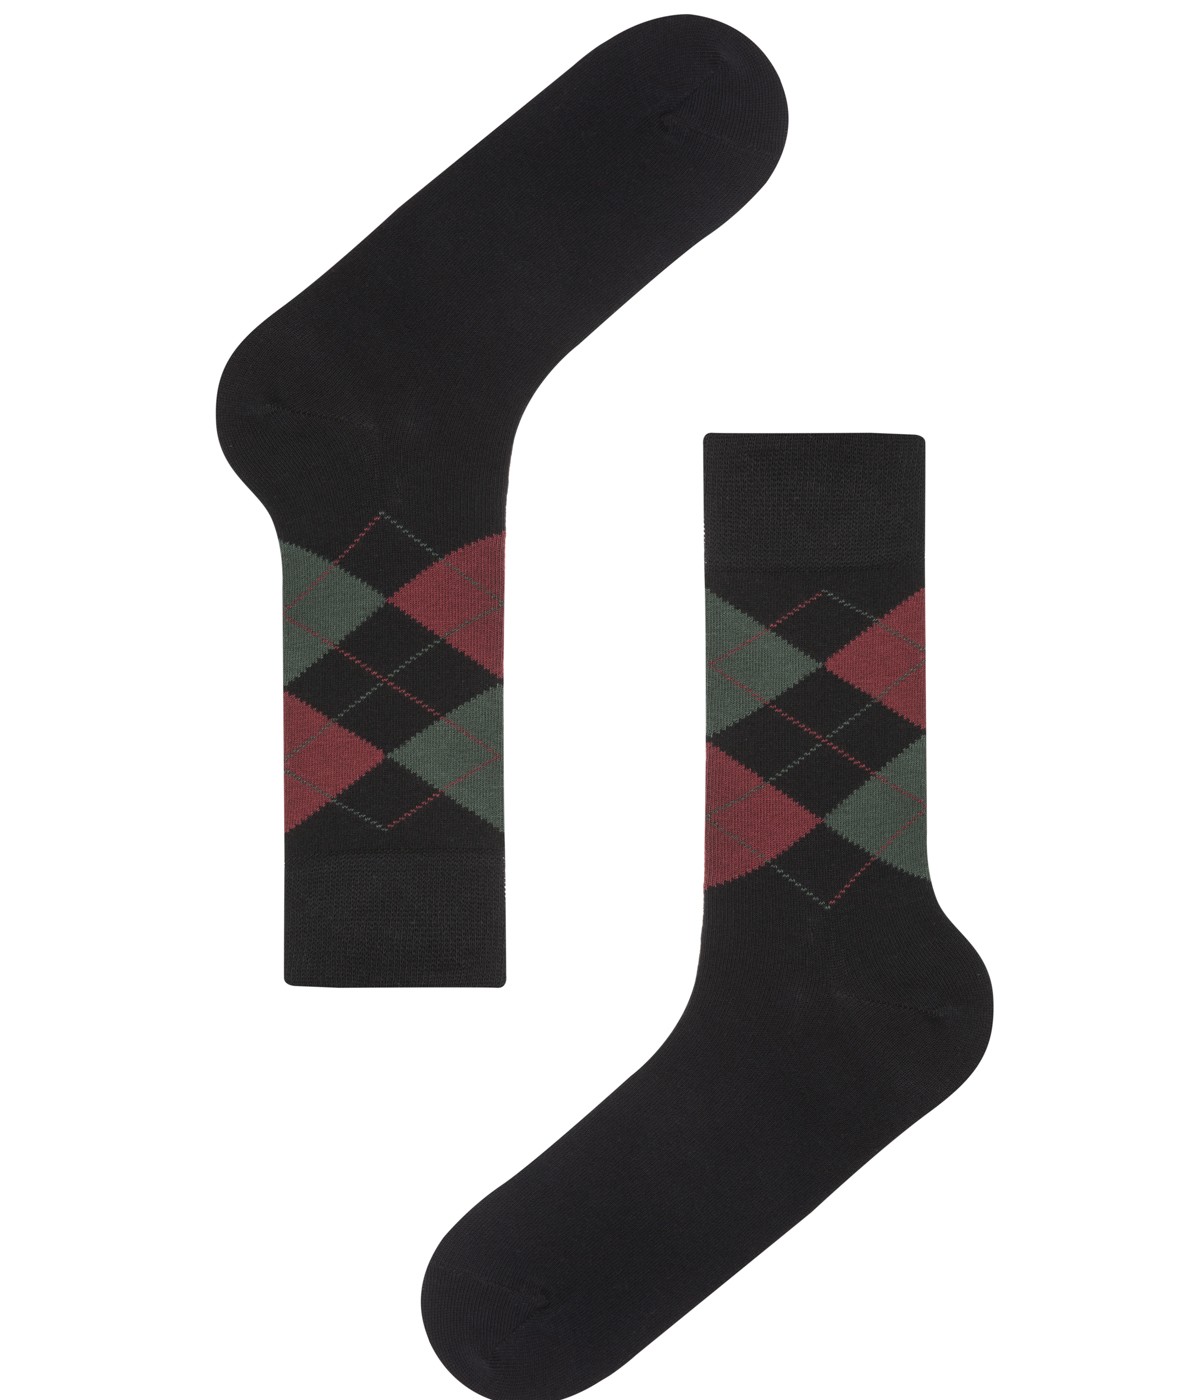 Socks with Male Baklava 3 In 1